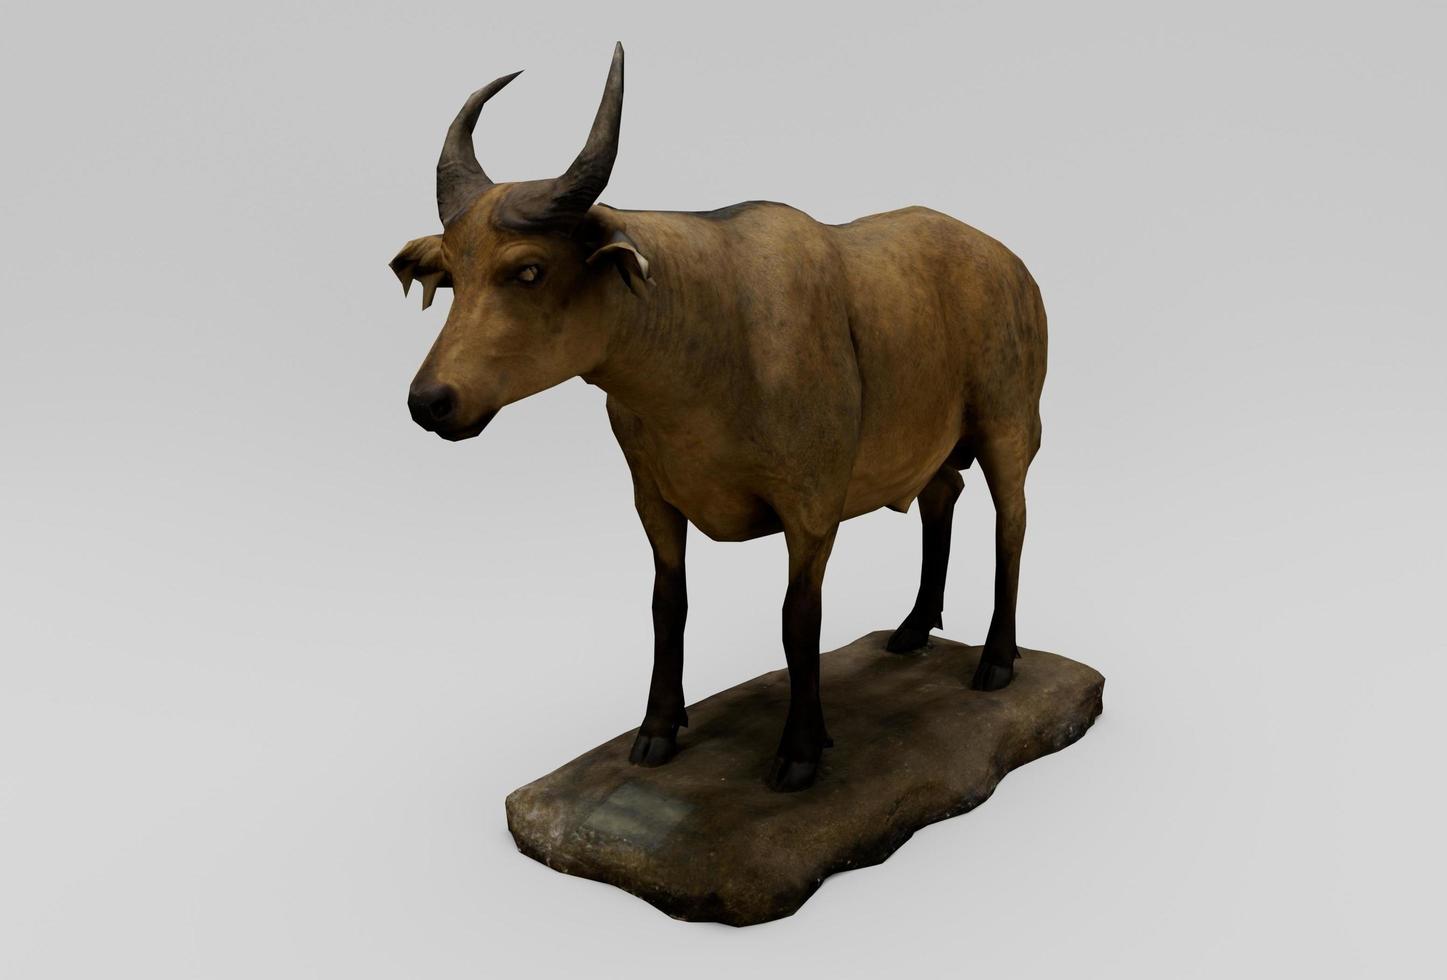 afrikansk buffel, däggdjur 3d tolkning på vit bakgrund foto